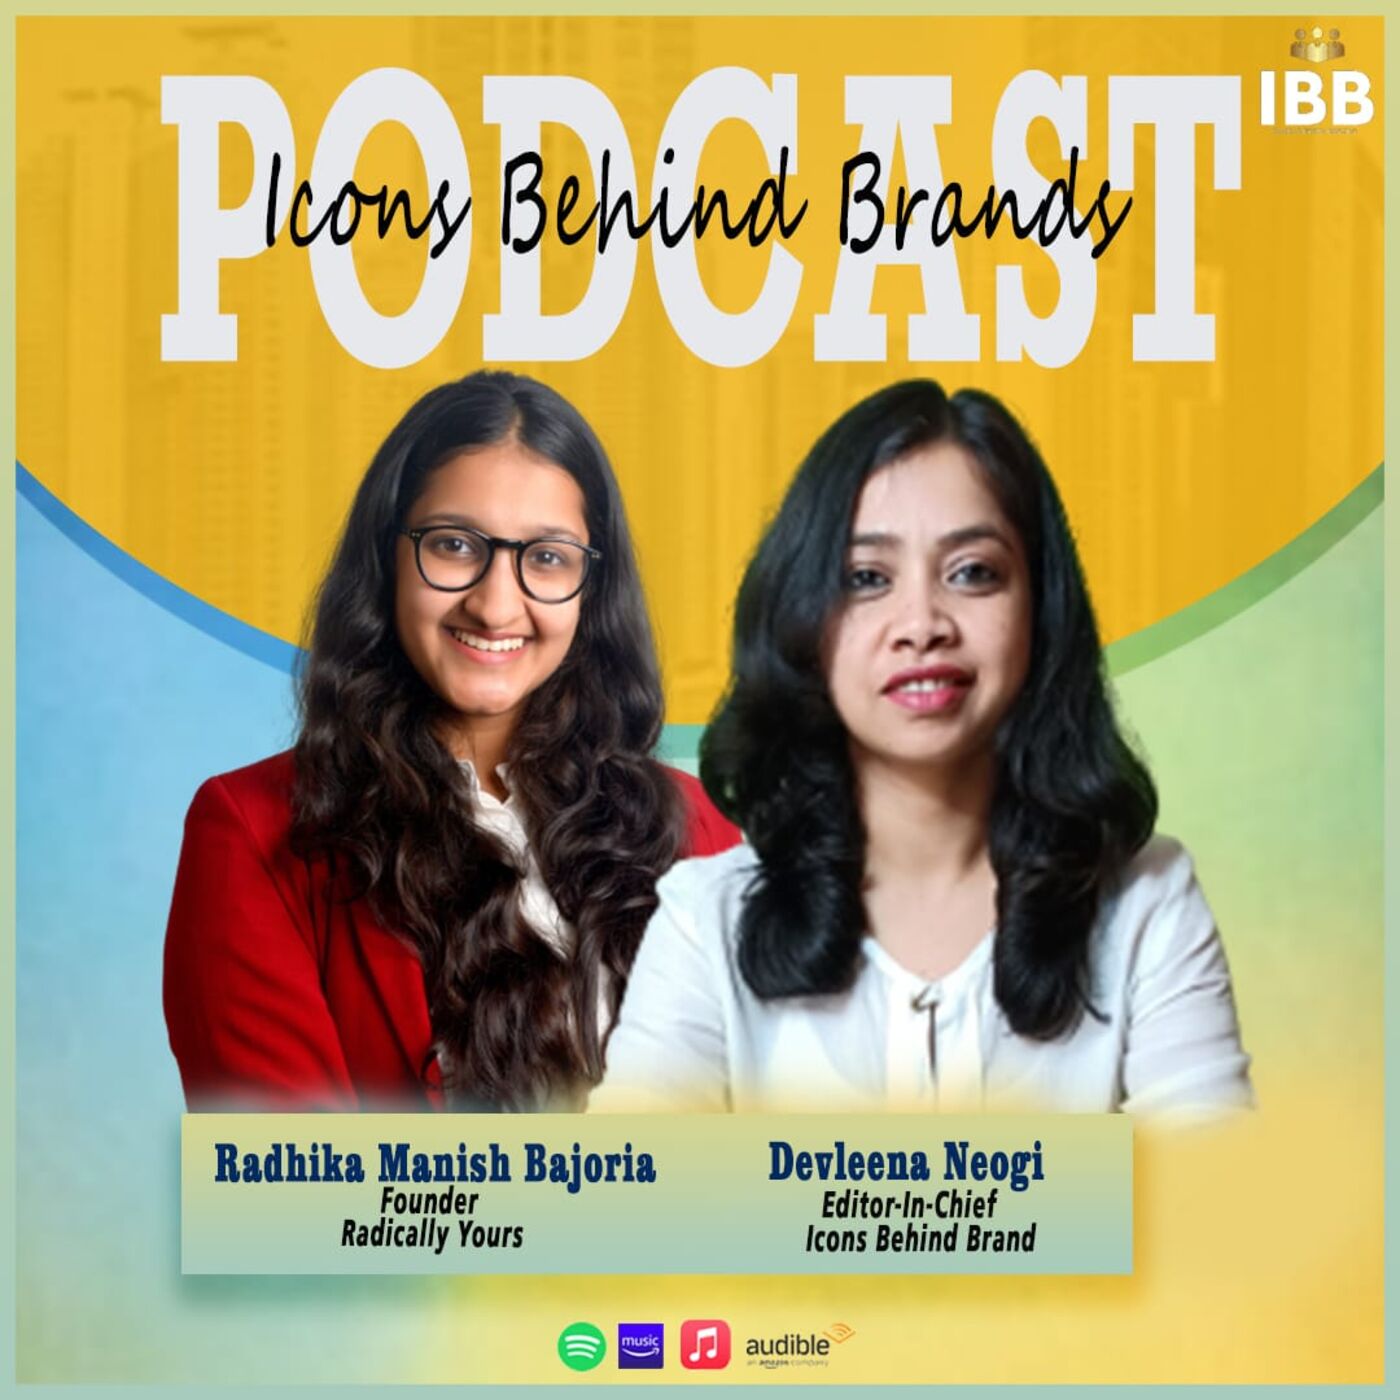 Amazing Tips For Content Marketing| Ms Radhika Manish Bajouria|Radically Yours| IBB